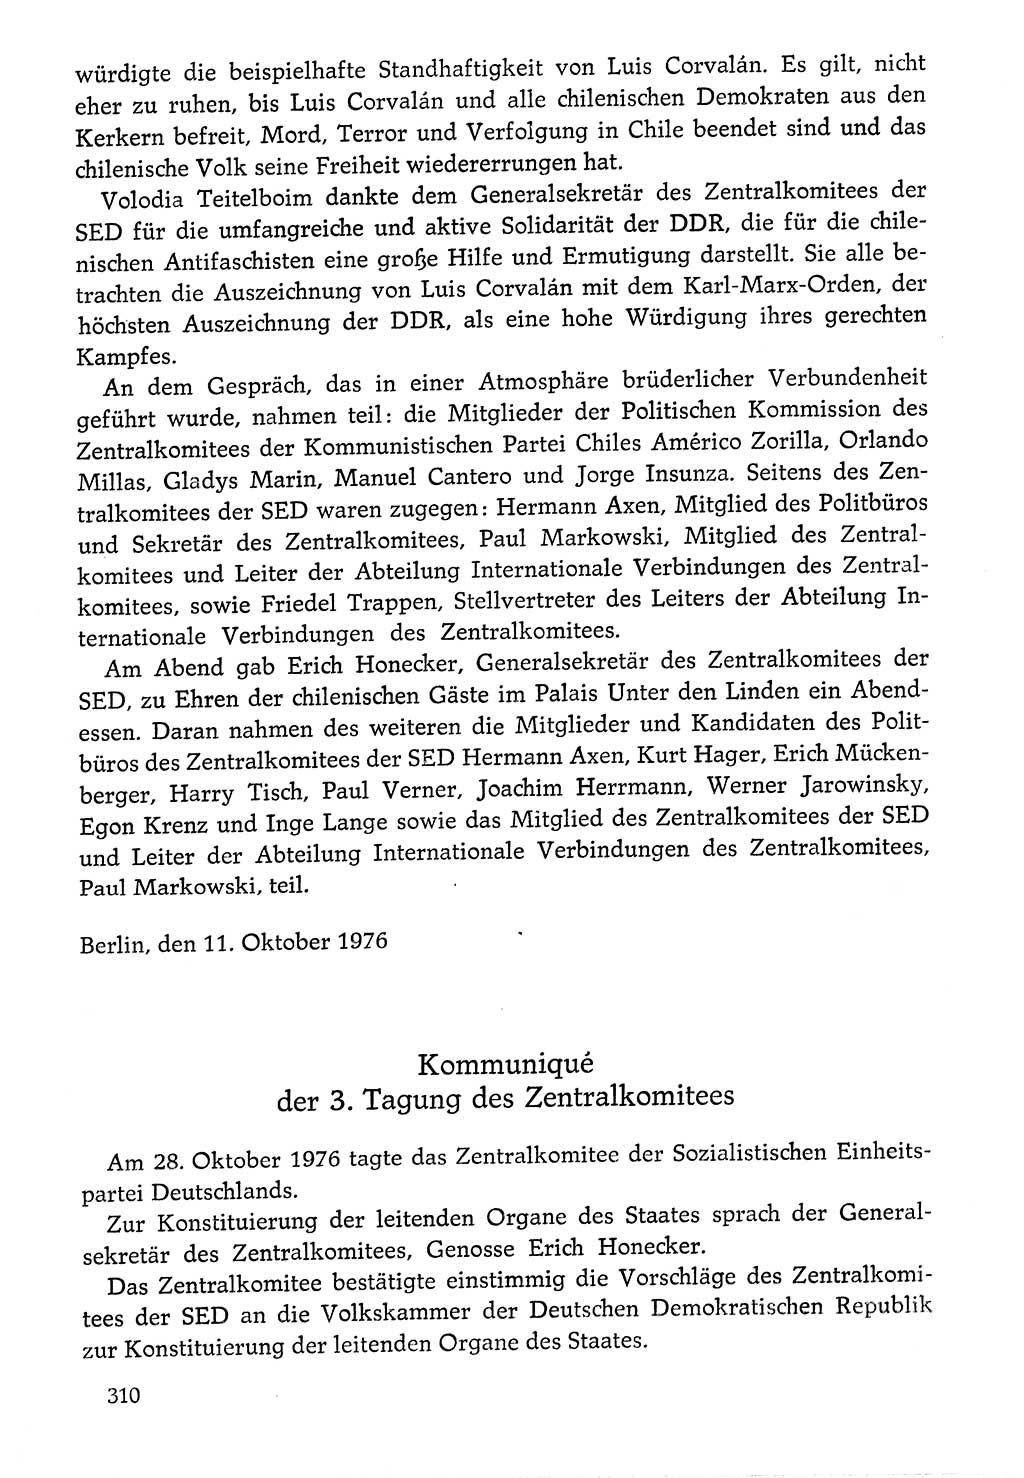 Dokumente der Sozialistischen Einheitspartei Deutschlands (SED) [Deutsche Demokratische Republik (DDR)] 1976-1977, Seite 310 (Dok. SED DDR 1976-1977, S. 310)